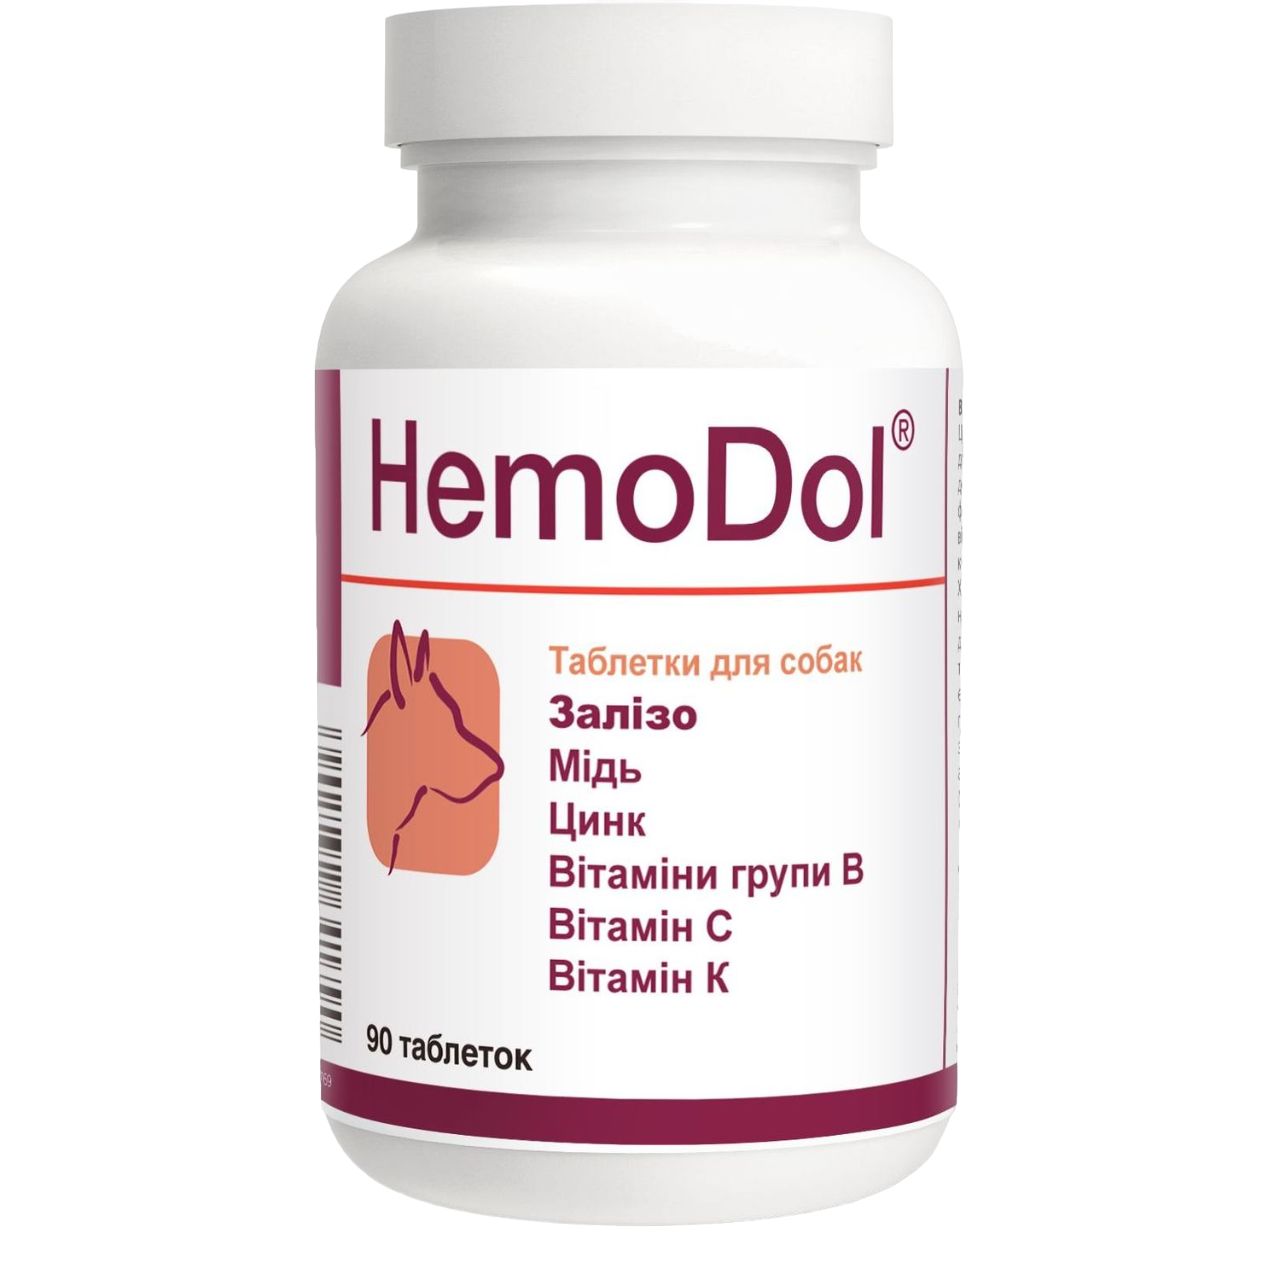 Вітамінно-мінеральна добавка Dolfos HemoDol при анемії, 90 таблеток - фото 1